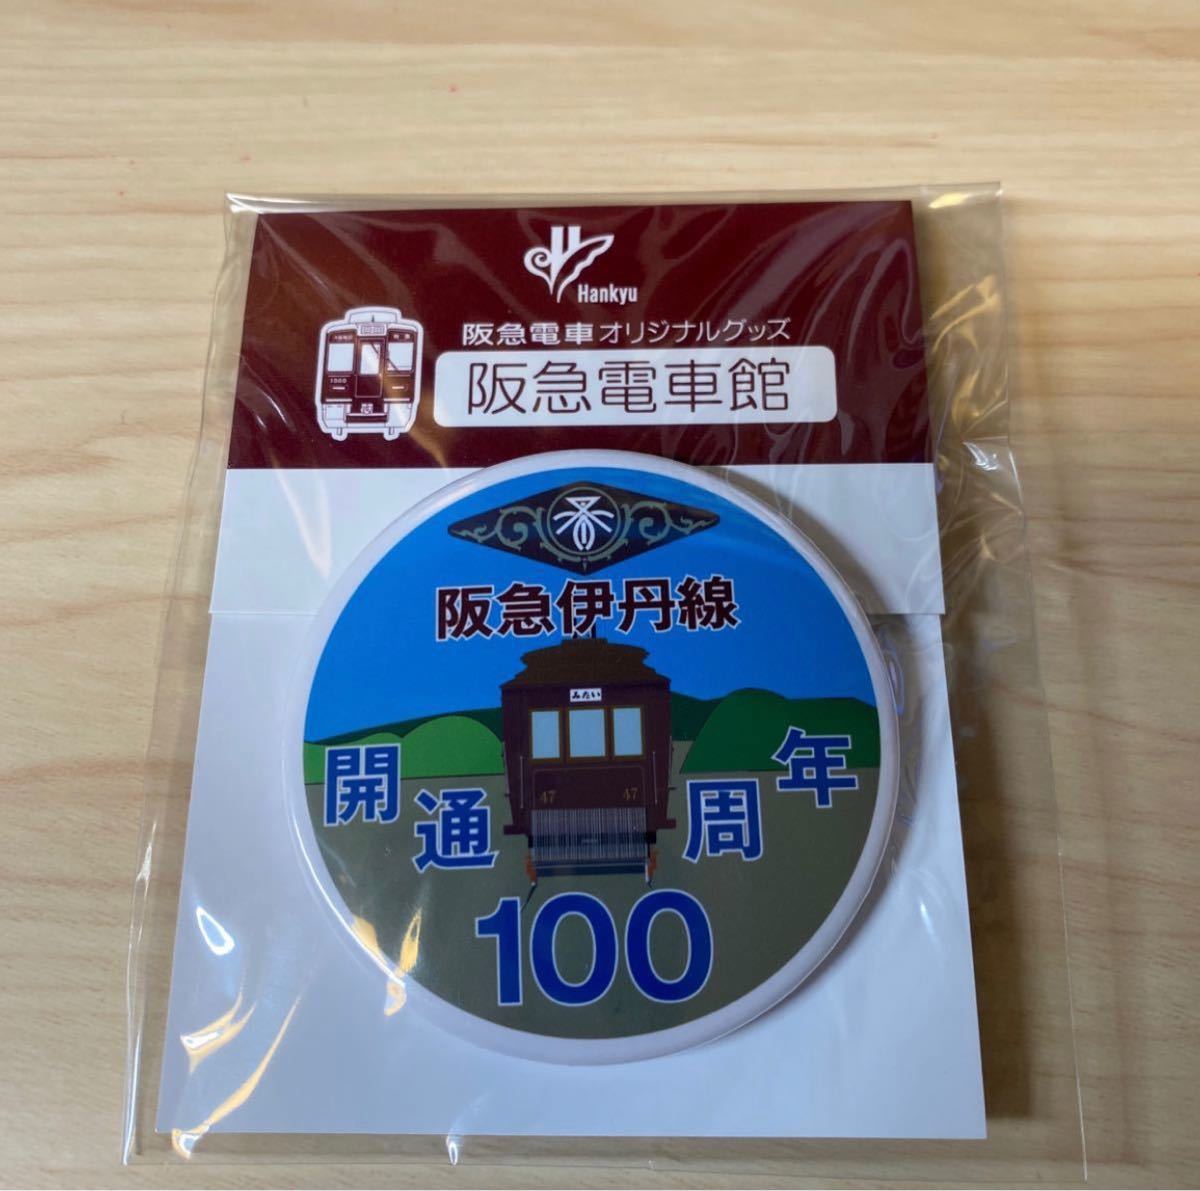 神戸線・伊丹線開通100周年記念ヘッドマーク缶バッジ4点セット